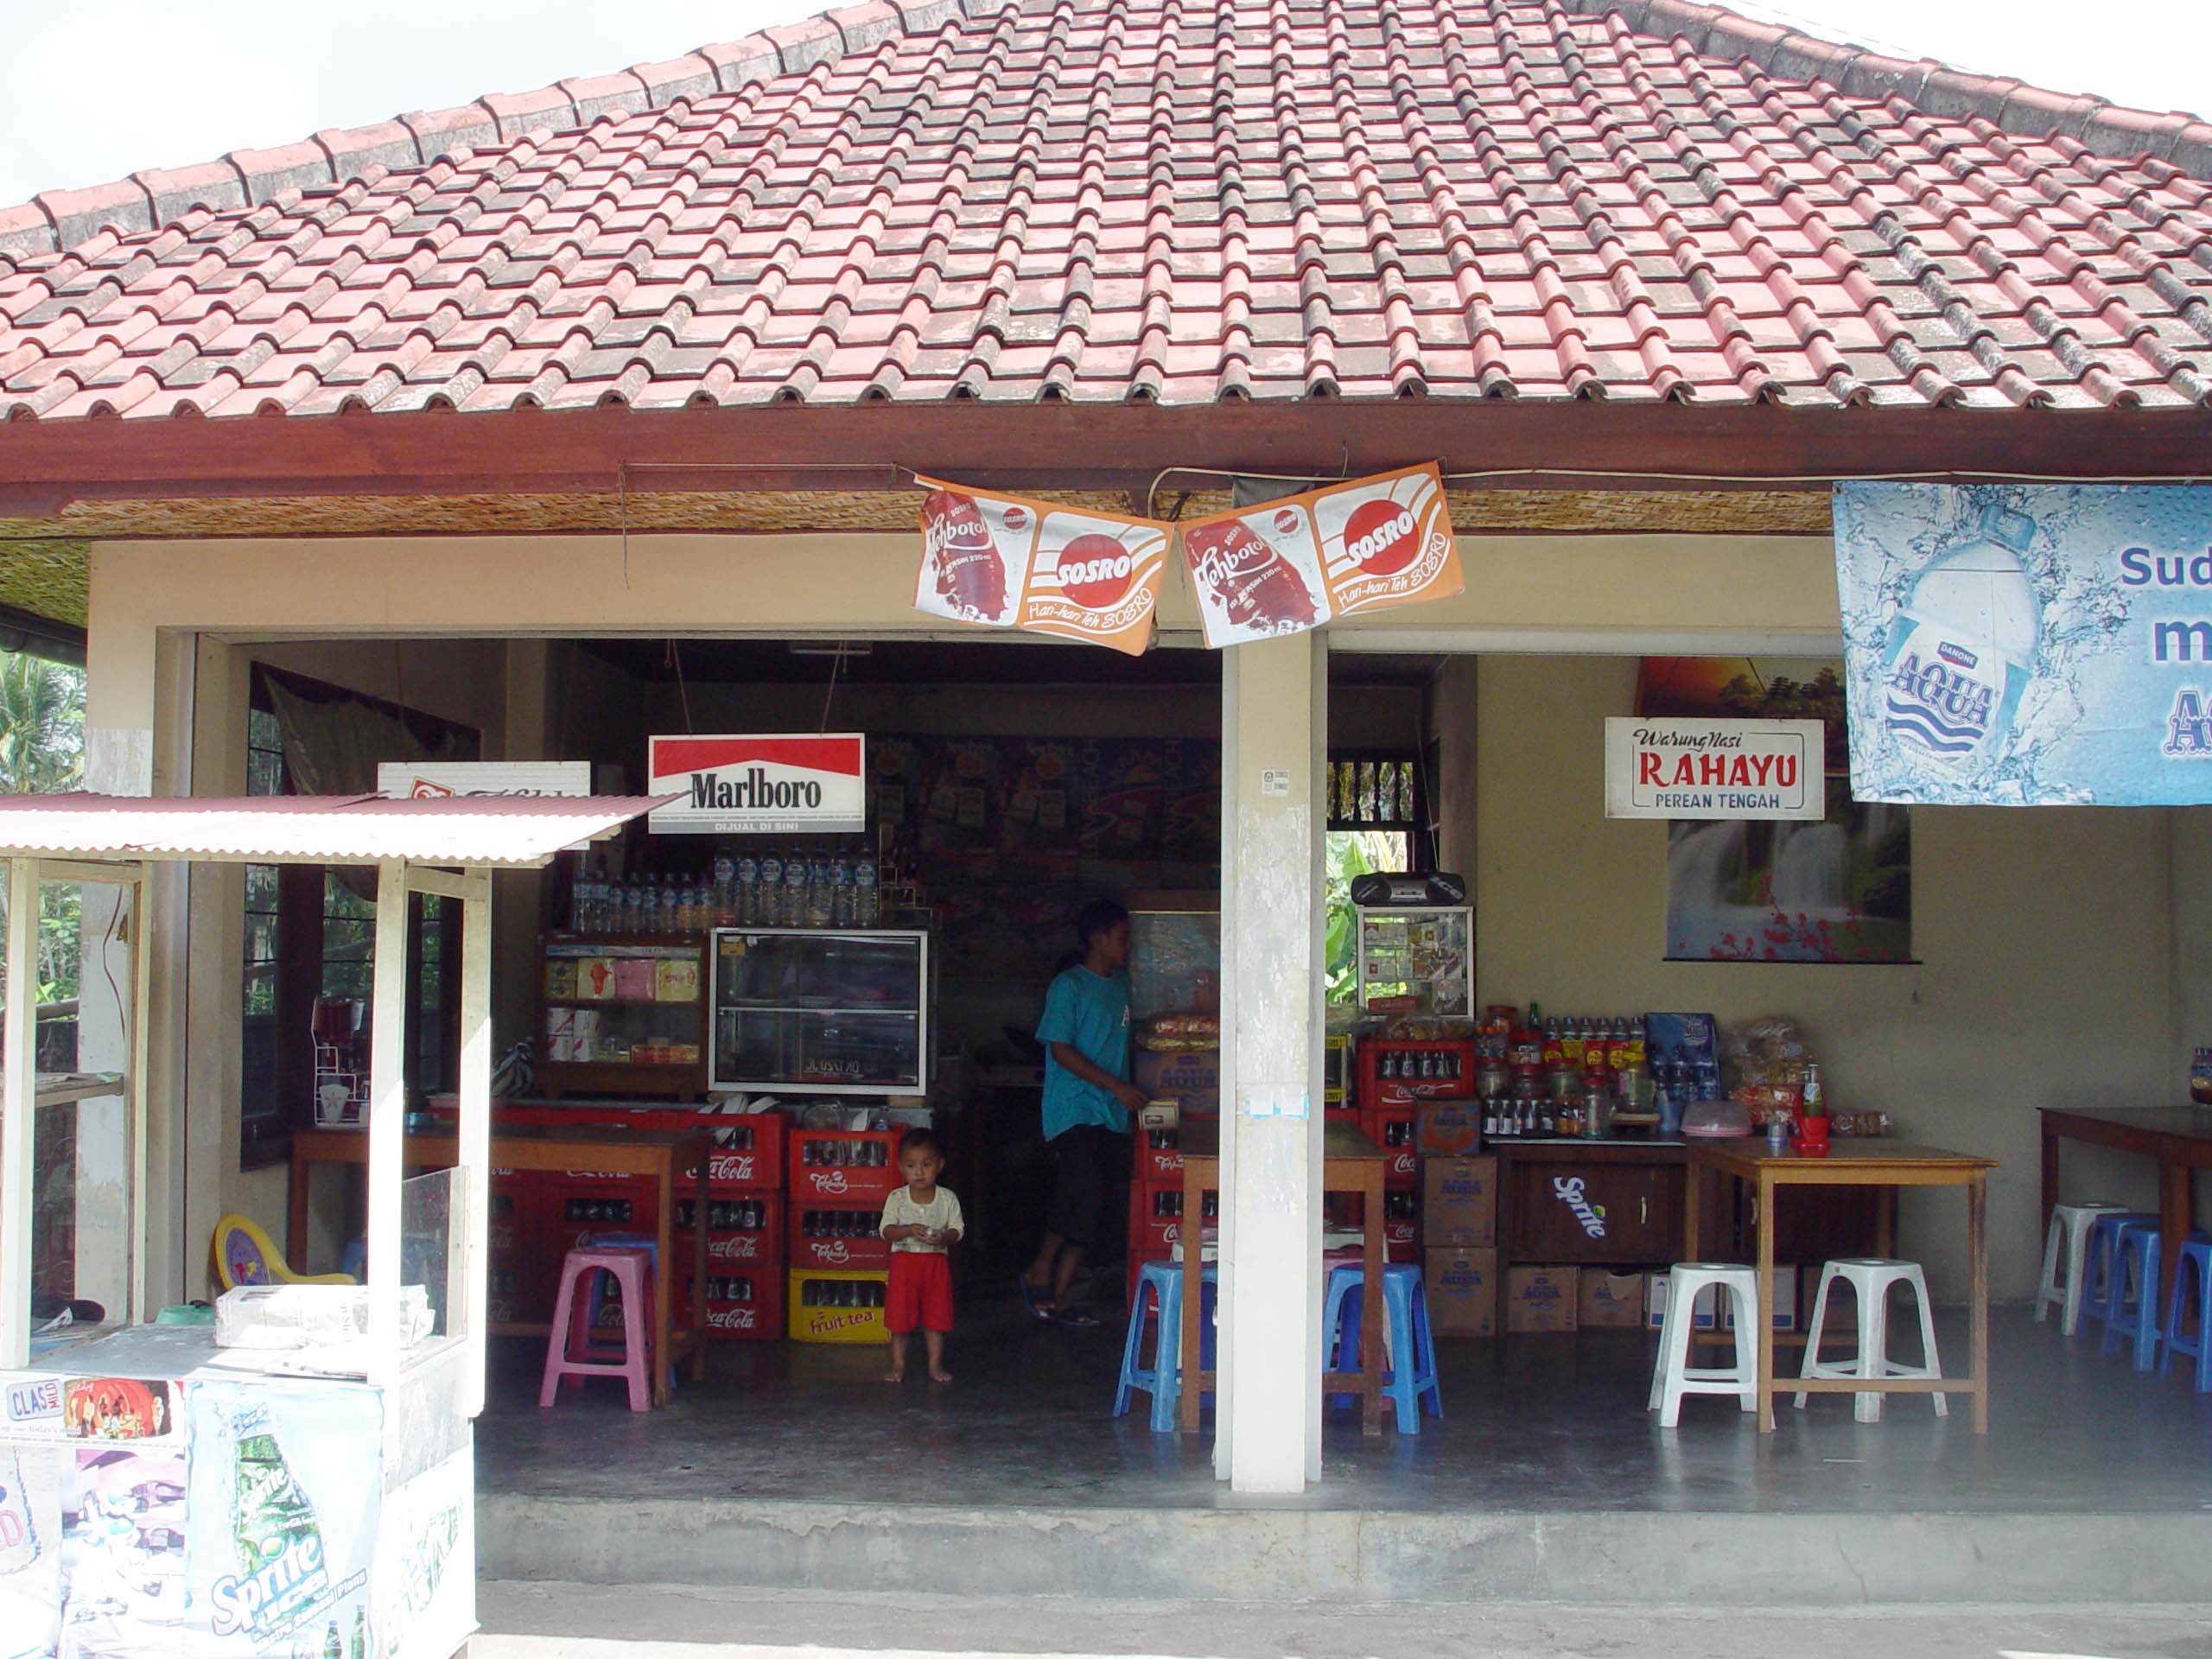 인도네시아 발리에서도 쉽게 찾아볼 수 있는 동네 구멍가게 형태의 '와룽(Warung)'